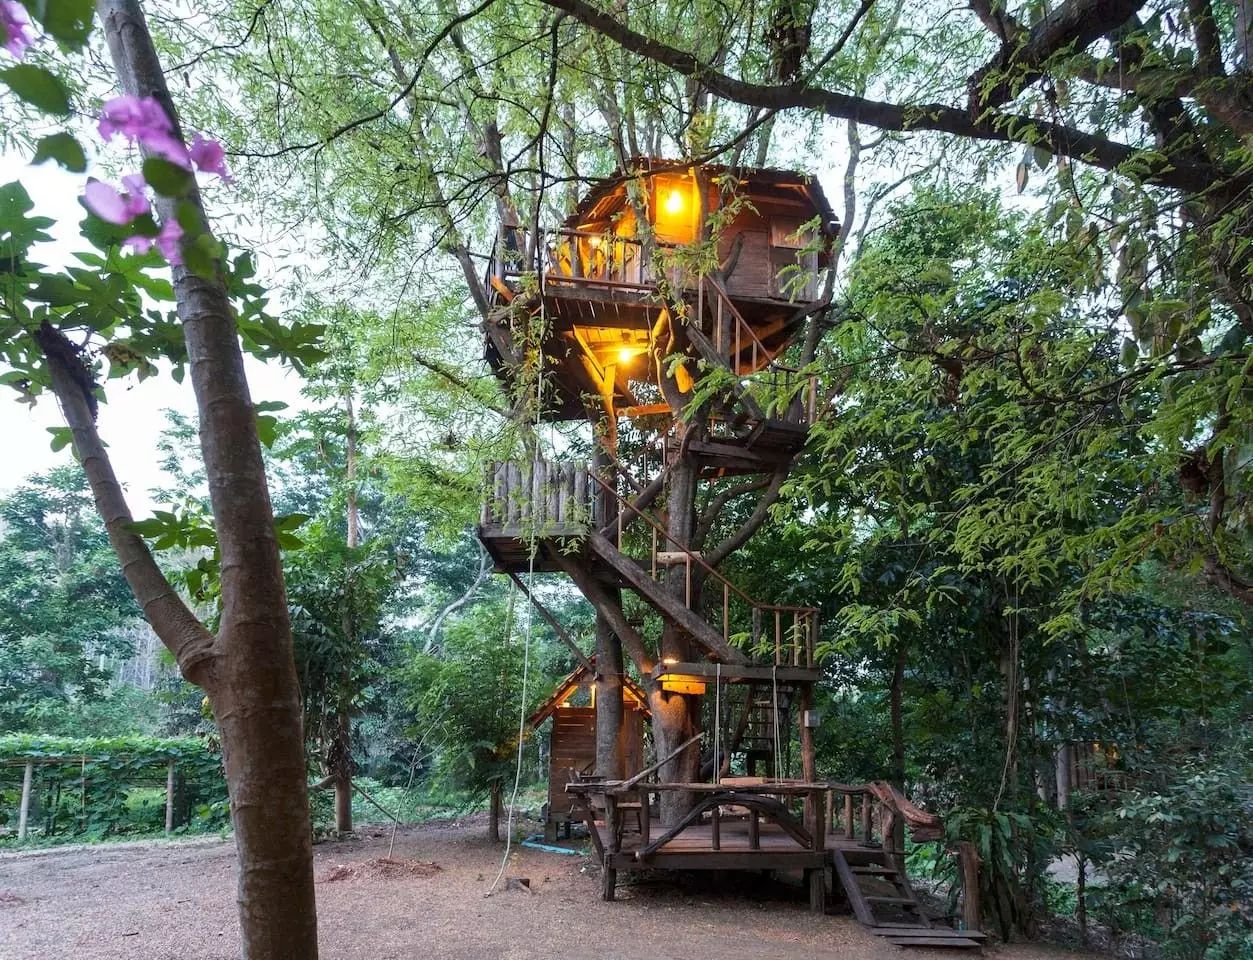 全世界最美的树屋!野趣,自然,梦幻,无比向往的童话世界